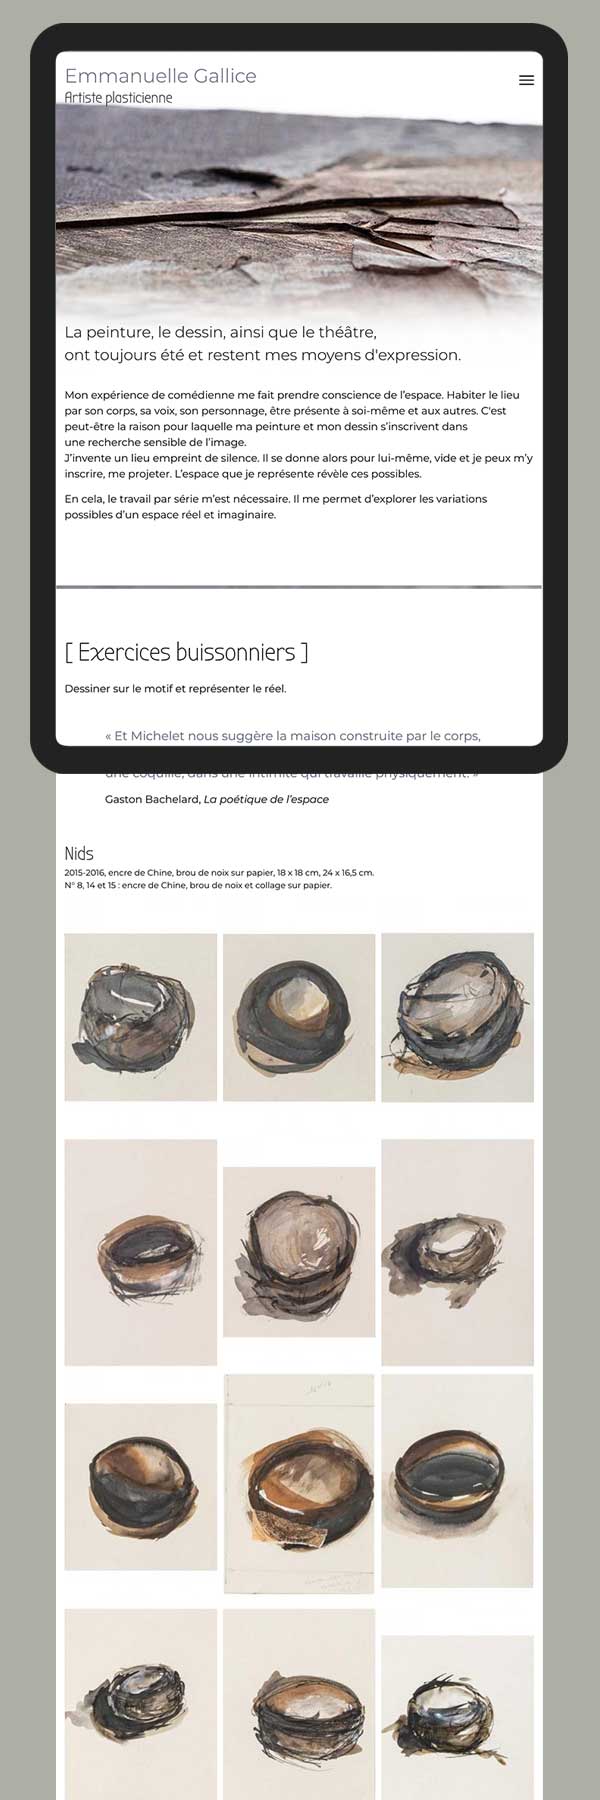 site Web emmanuellegallice.com, vue tablette début page – Webdesign & site